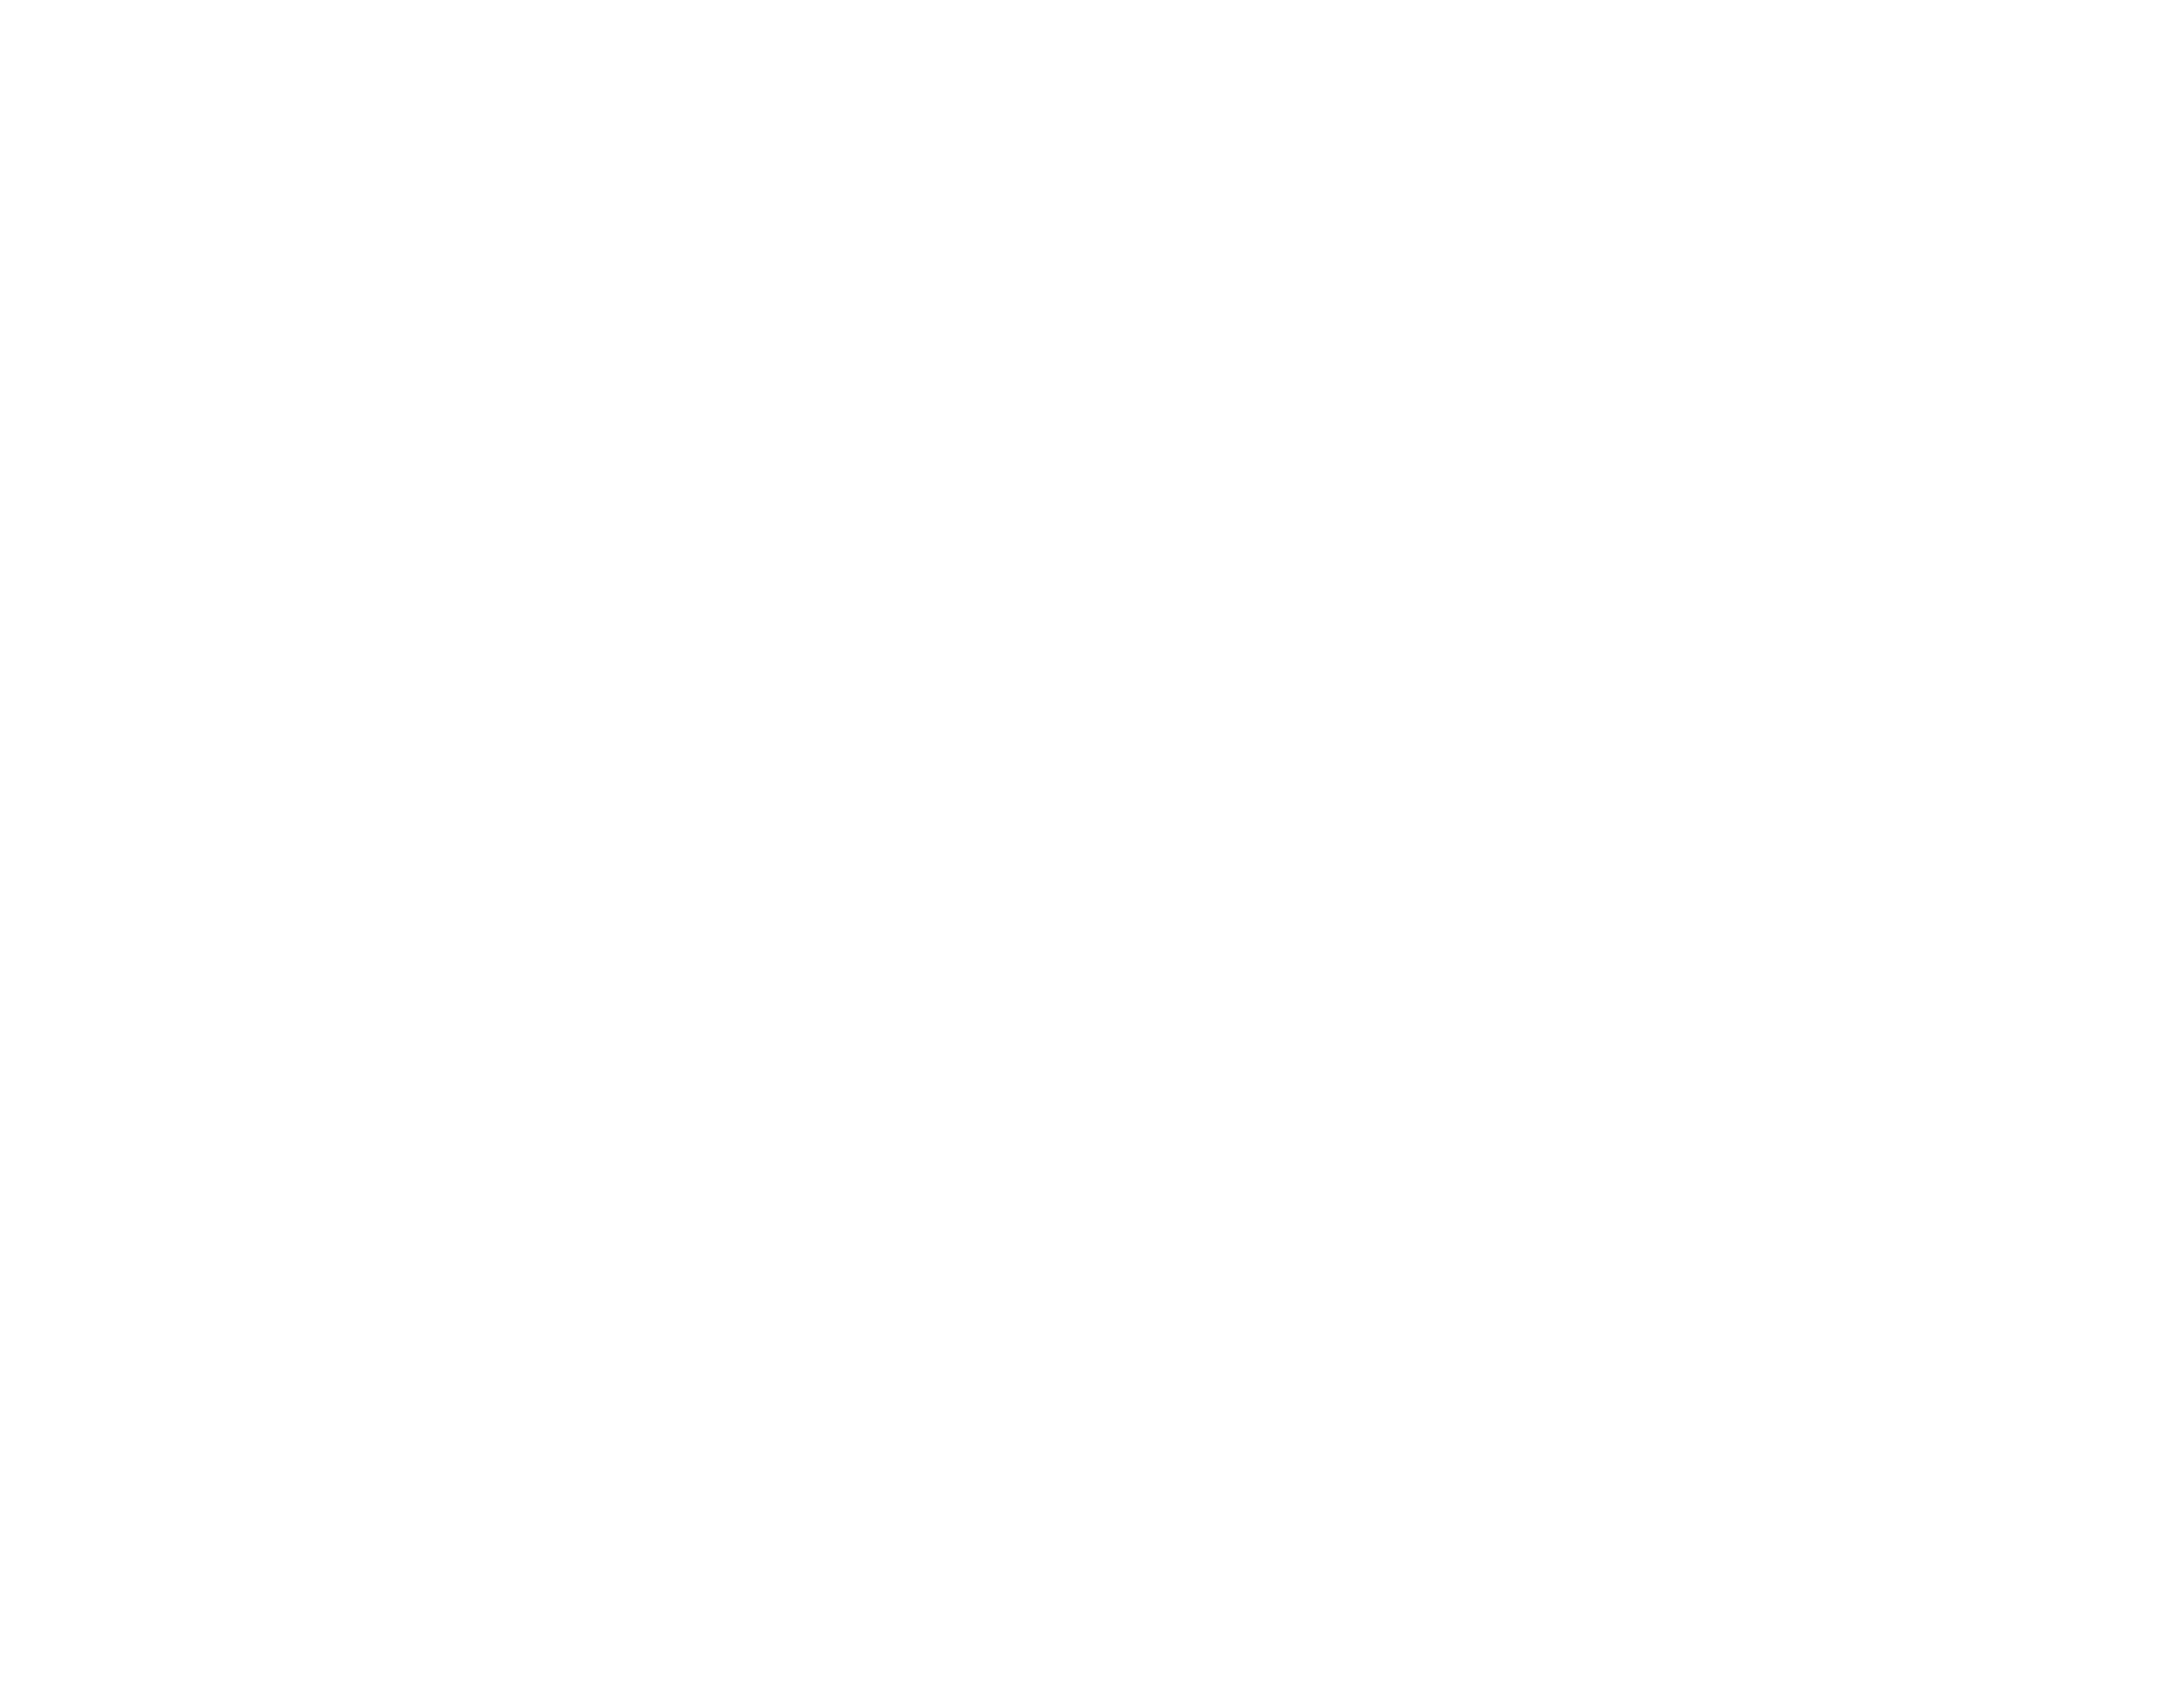 Cornerstone Church in Huntsville